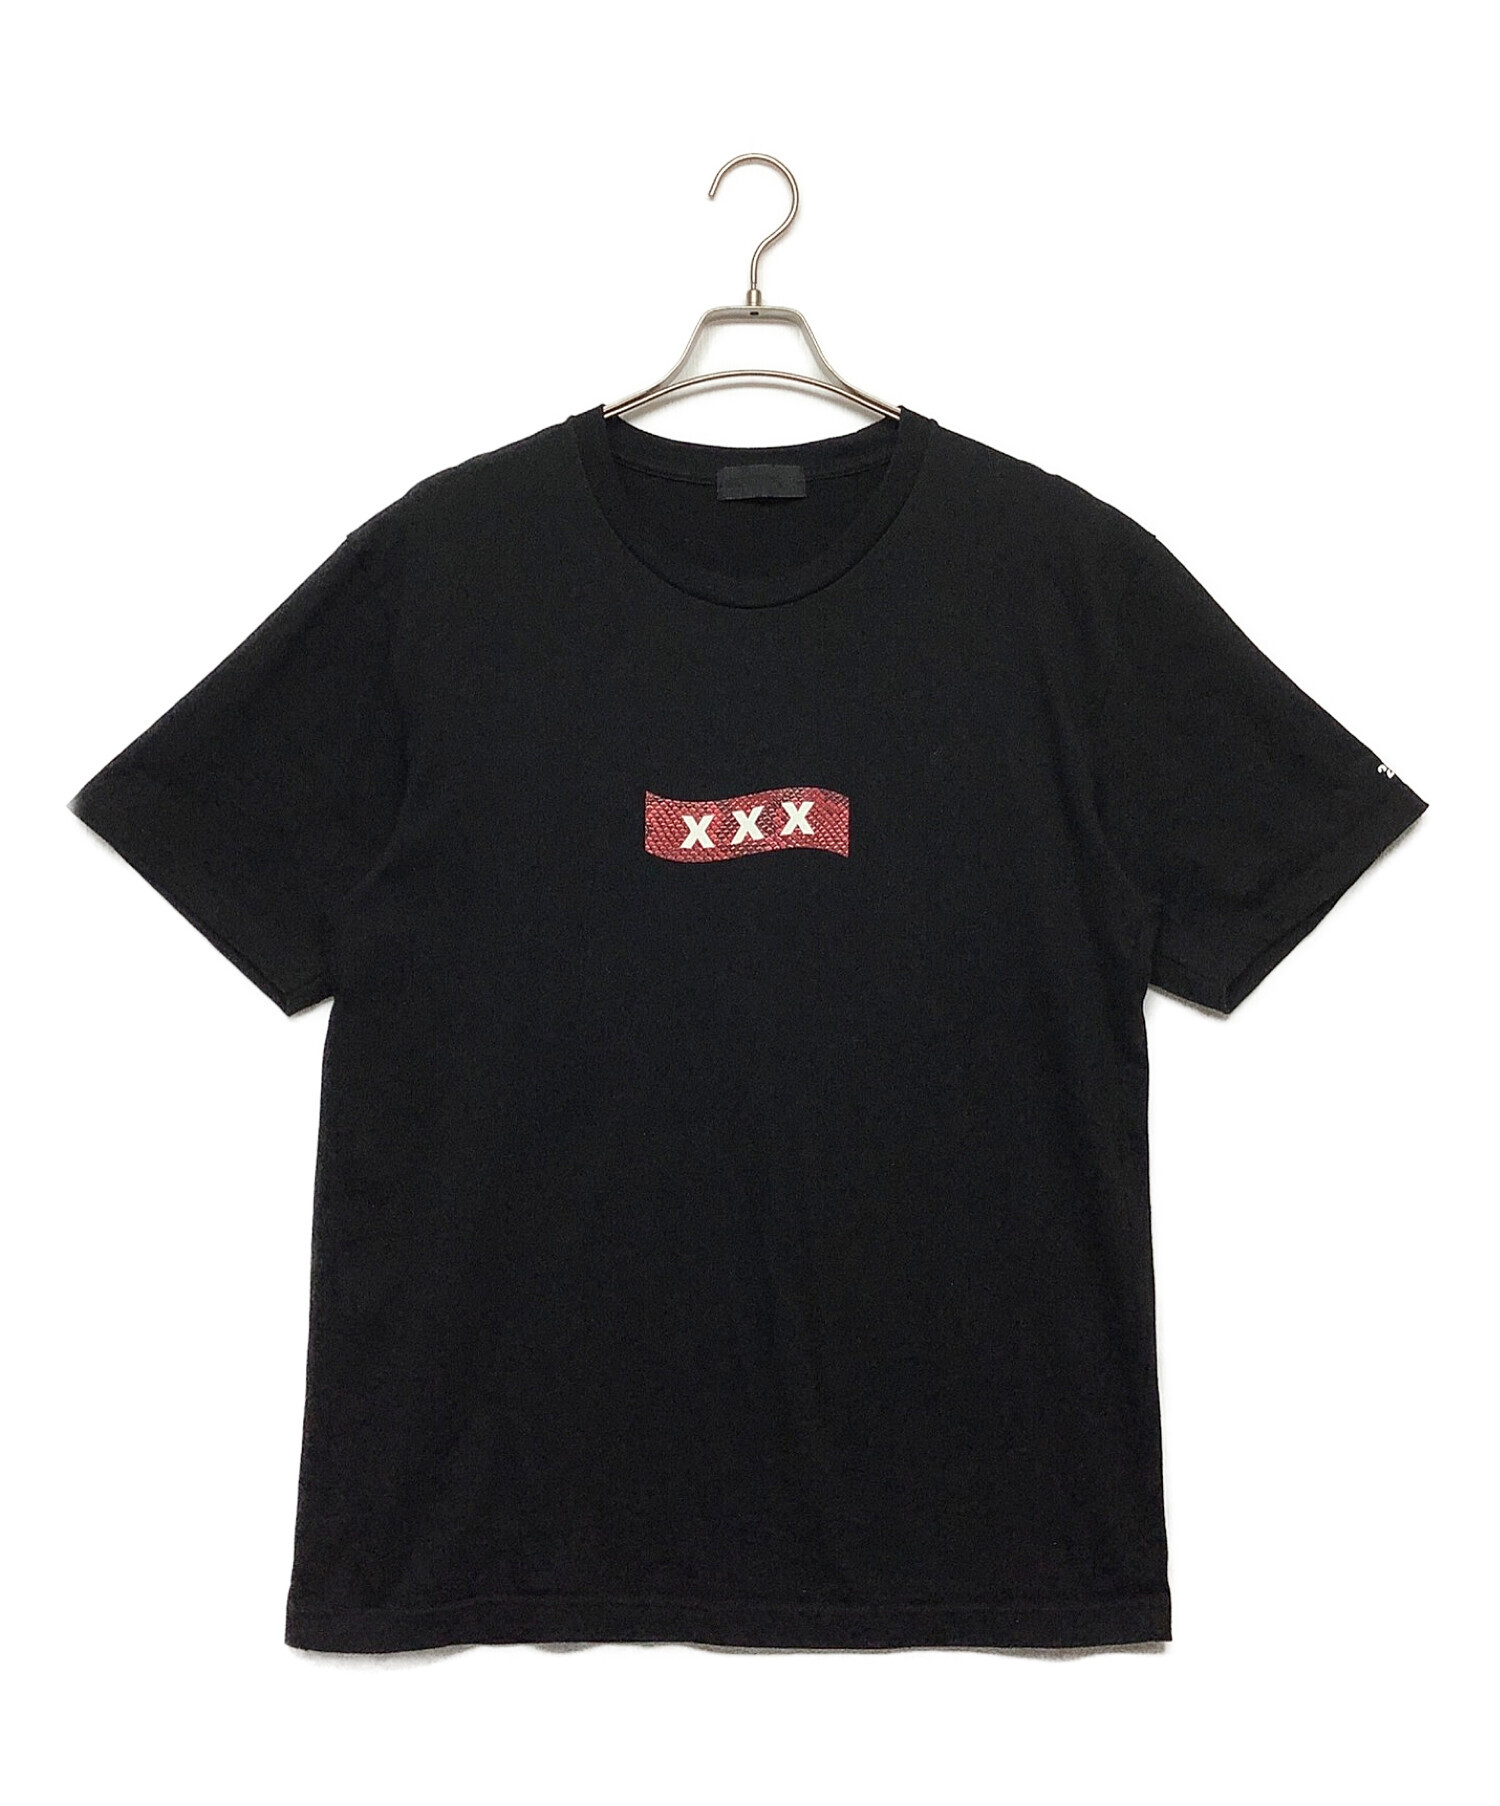 GOD SELECTION XXX (ゴットセレクショントリプルエックス) 半袖Tシャツ ブラック サイズ:XL